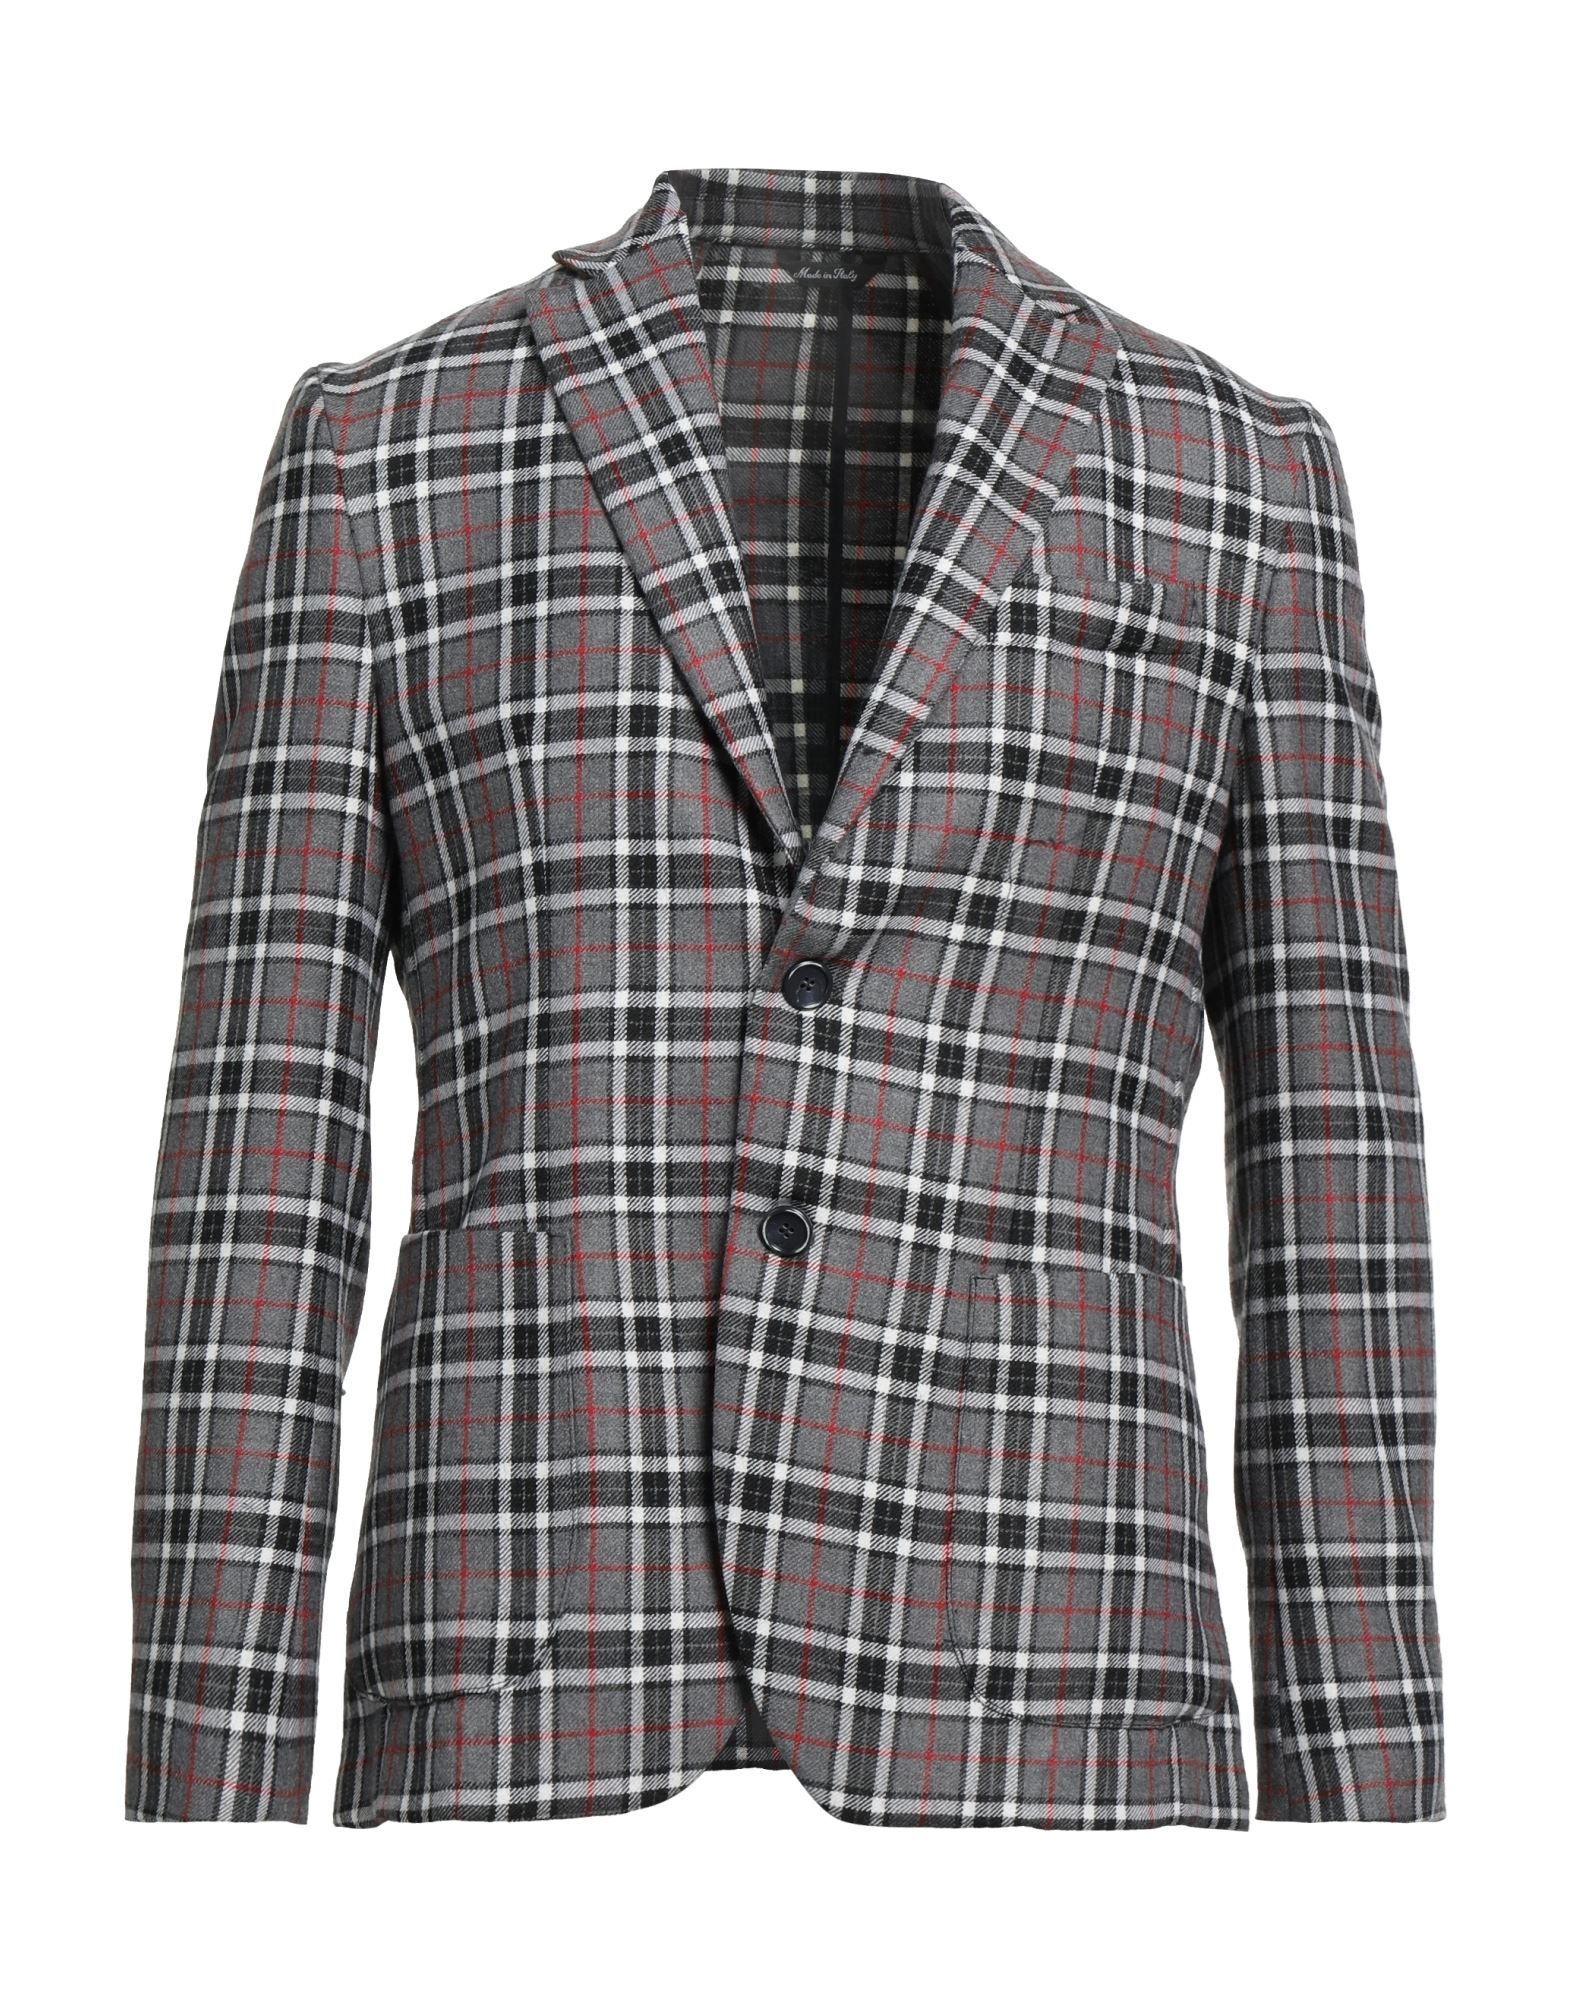 Domenico Tagliente Suit Jackets In Grey